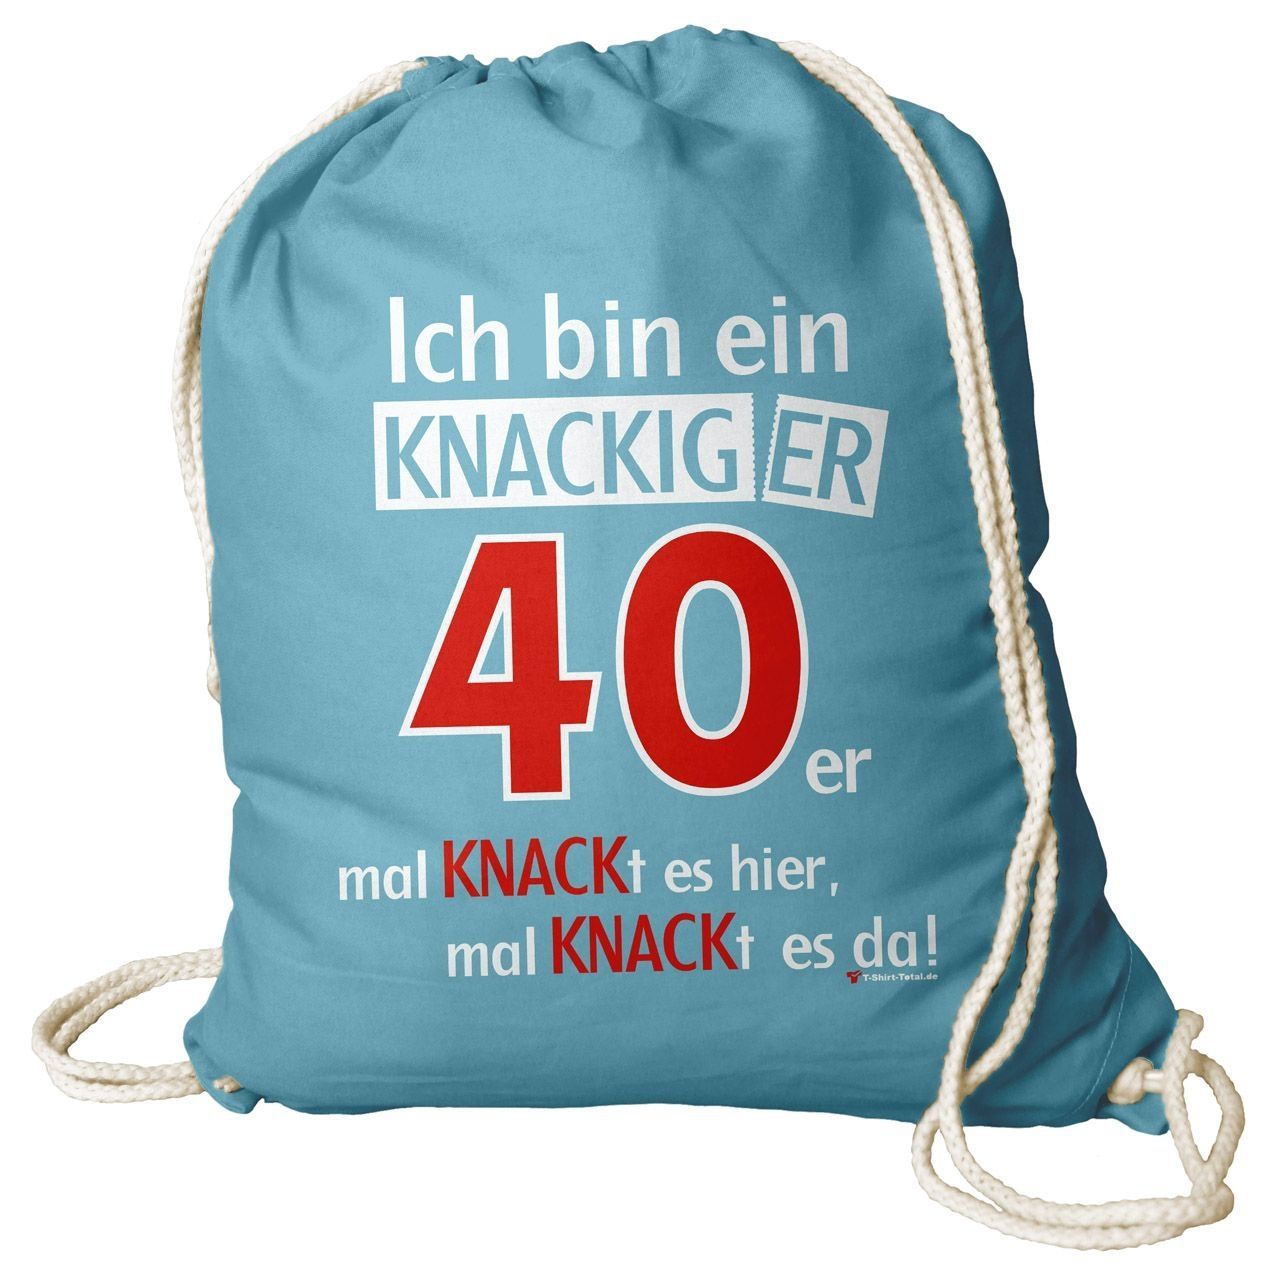 Knackiger 40er Rucksack Beutel türkis